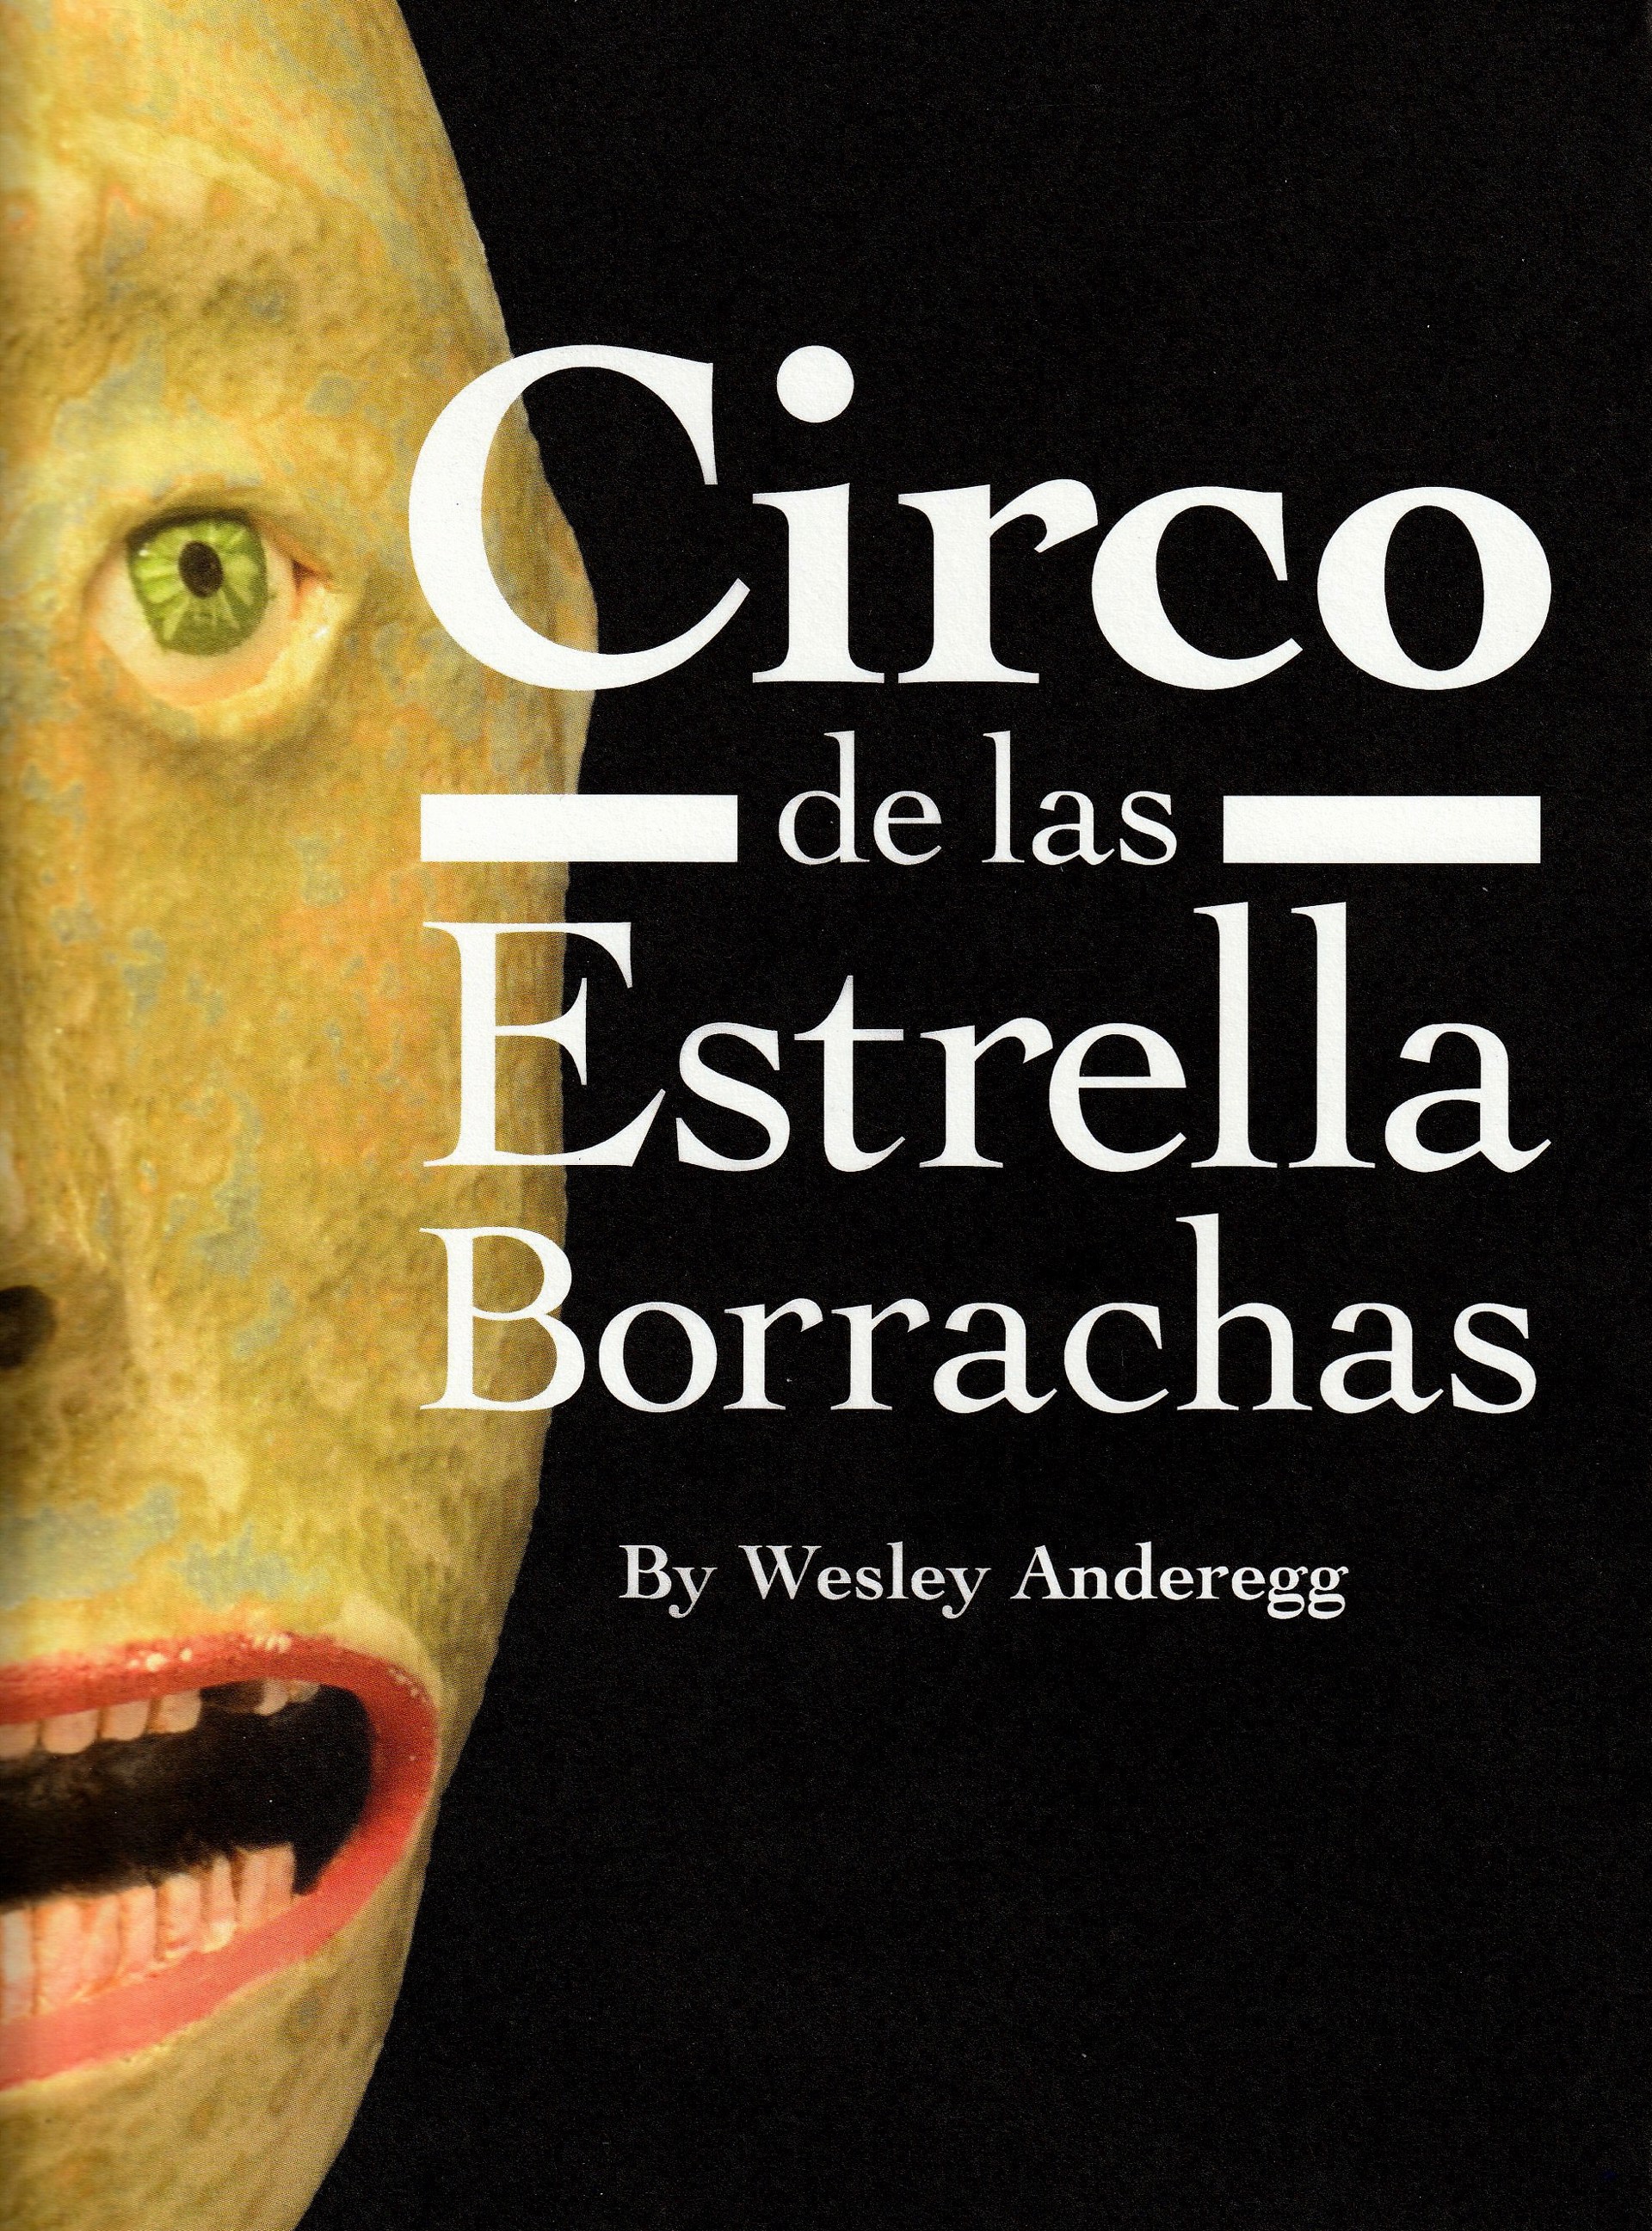 Circo de Las Estrellas Borrachas Book by Wesley Anderegg